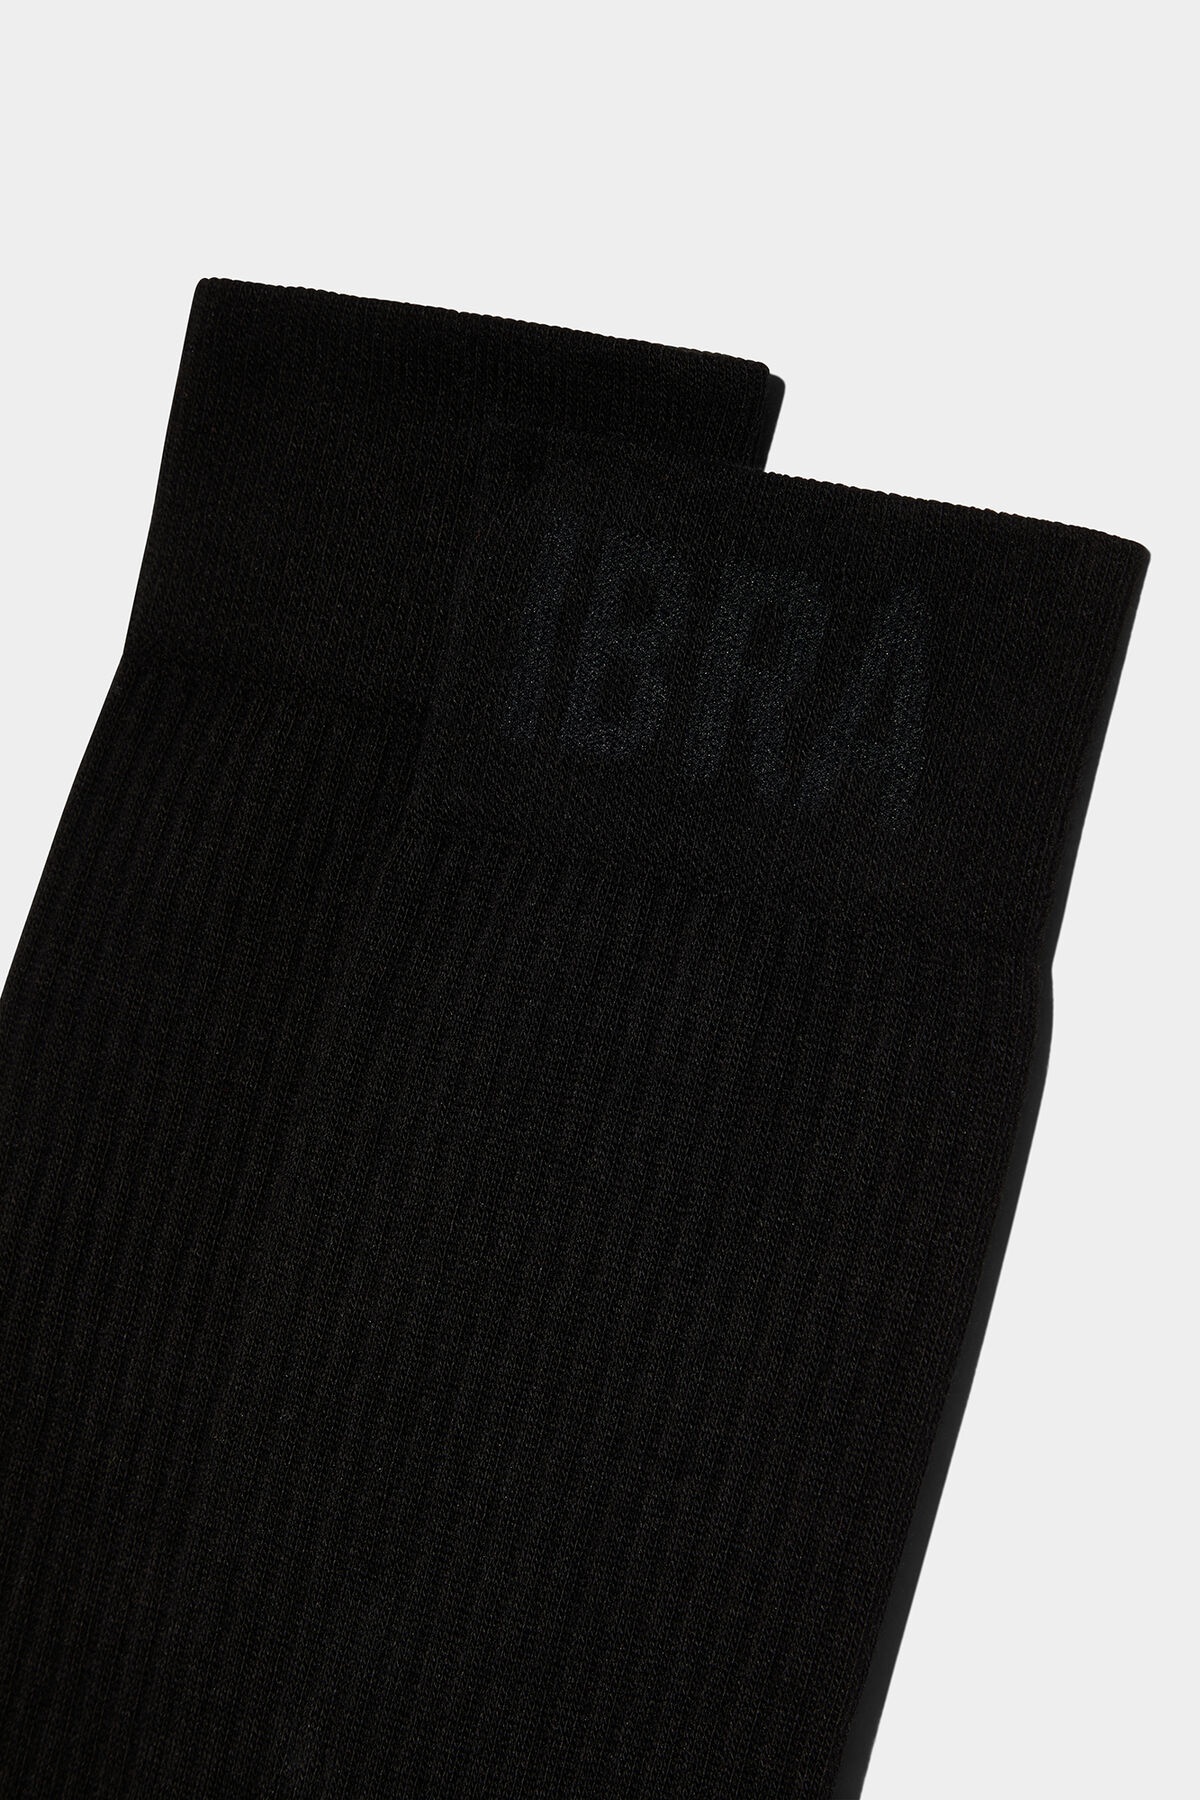 IBRA BLACK ON BLACK MID-CREW SOCKS - 3